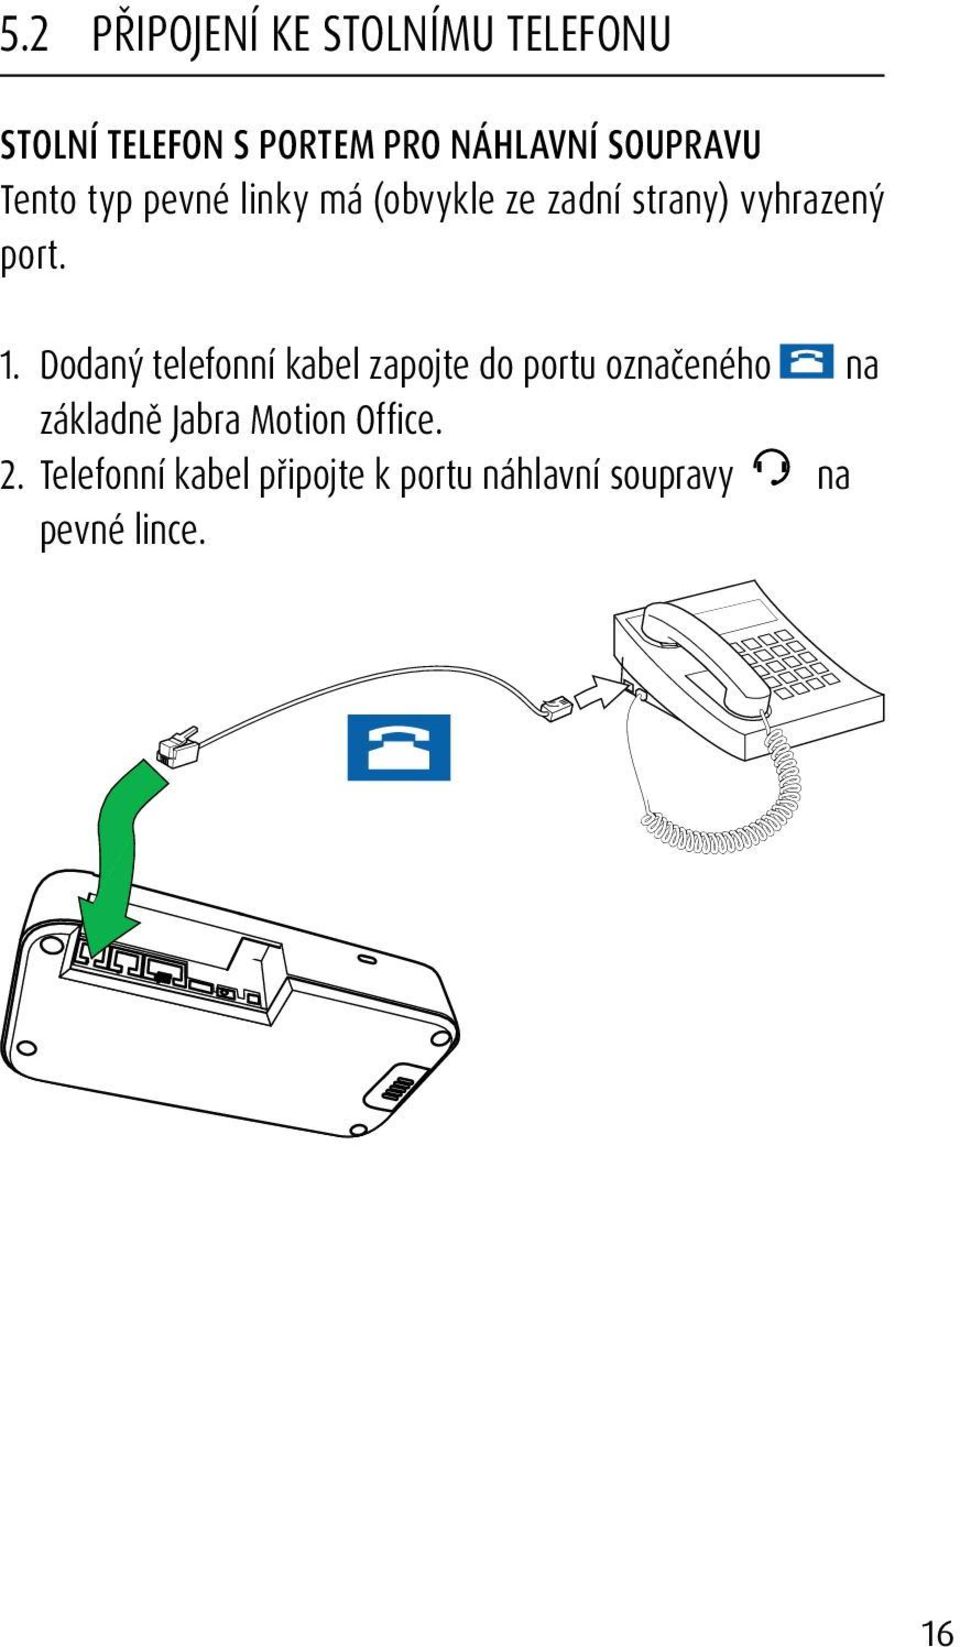 1. Dodaný telefonní kabel zapojte do portu označeného na základně Jabra